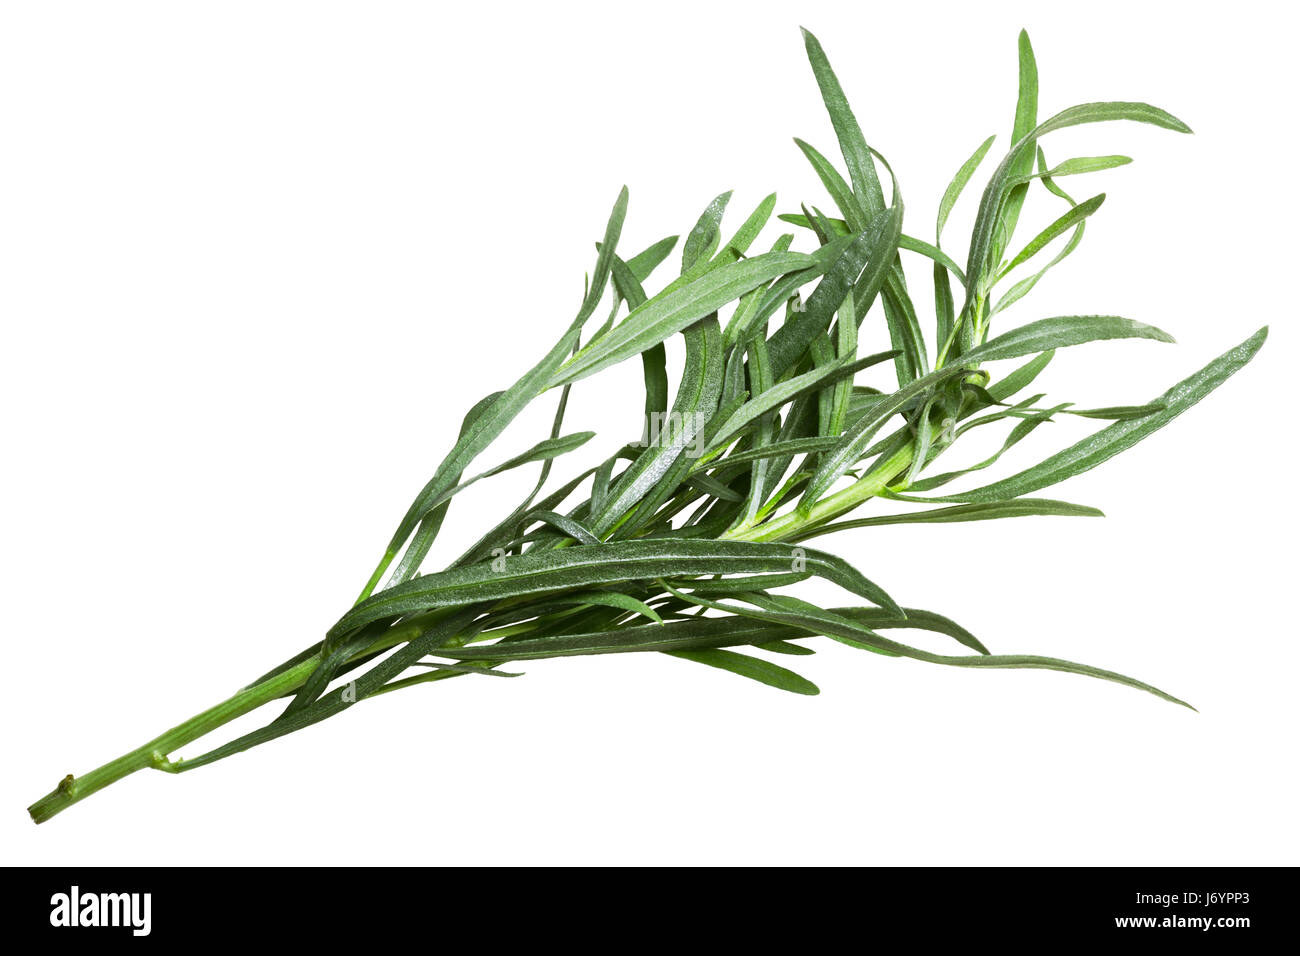 L'Estragon français (Artemisia dracunculus). Chemin de détourage, vue du dessus Banque D'Images